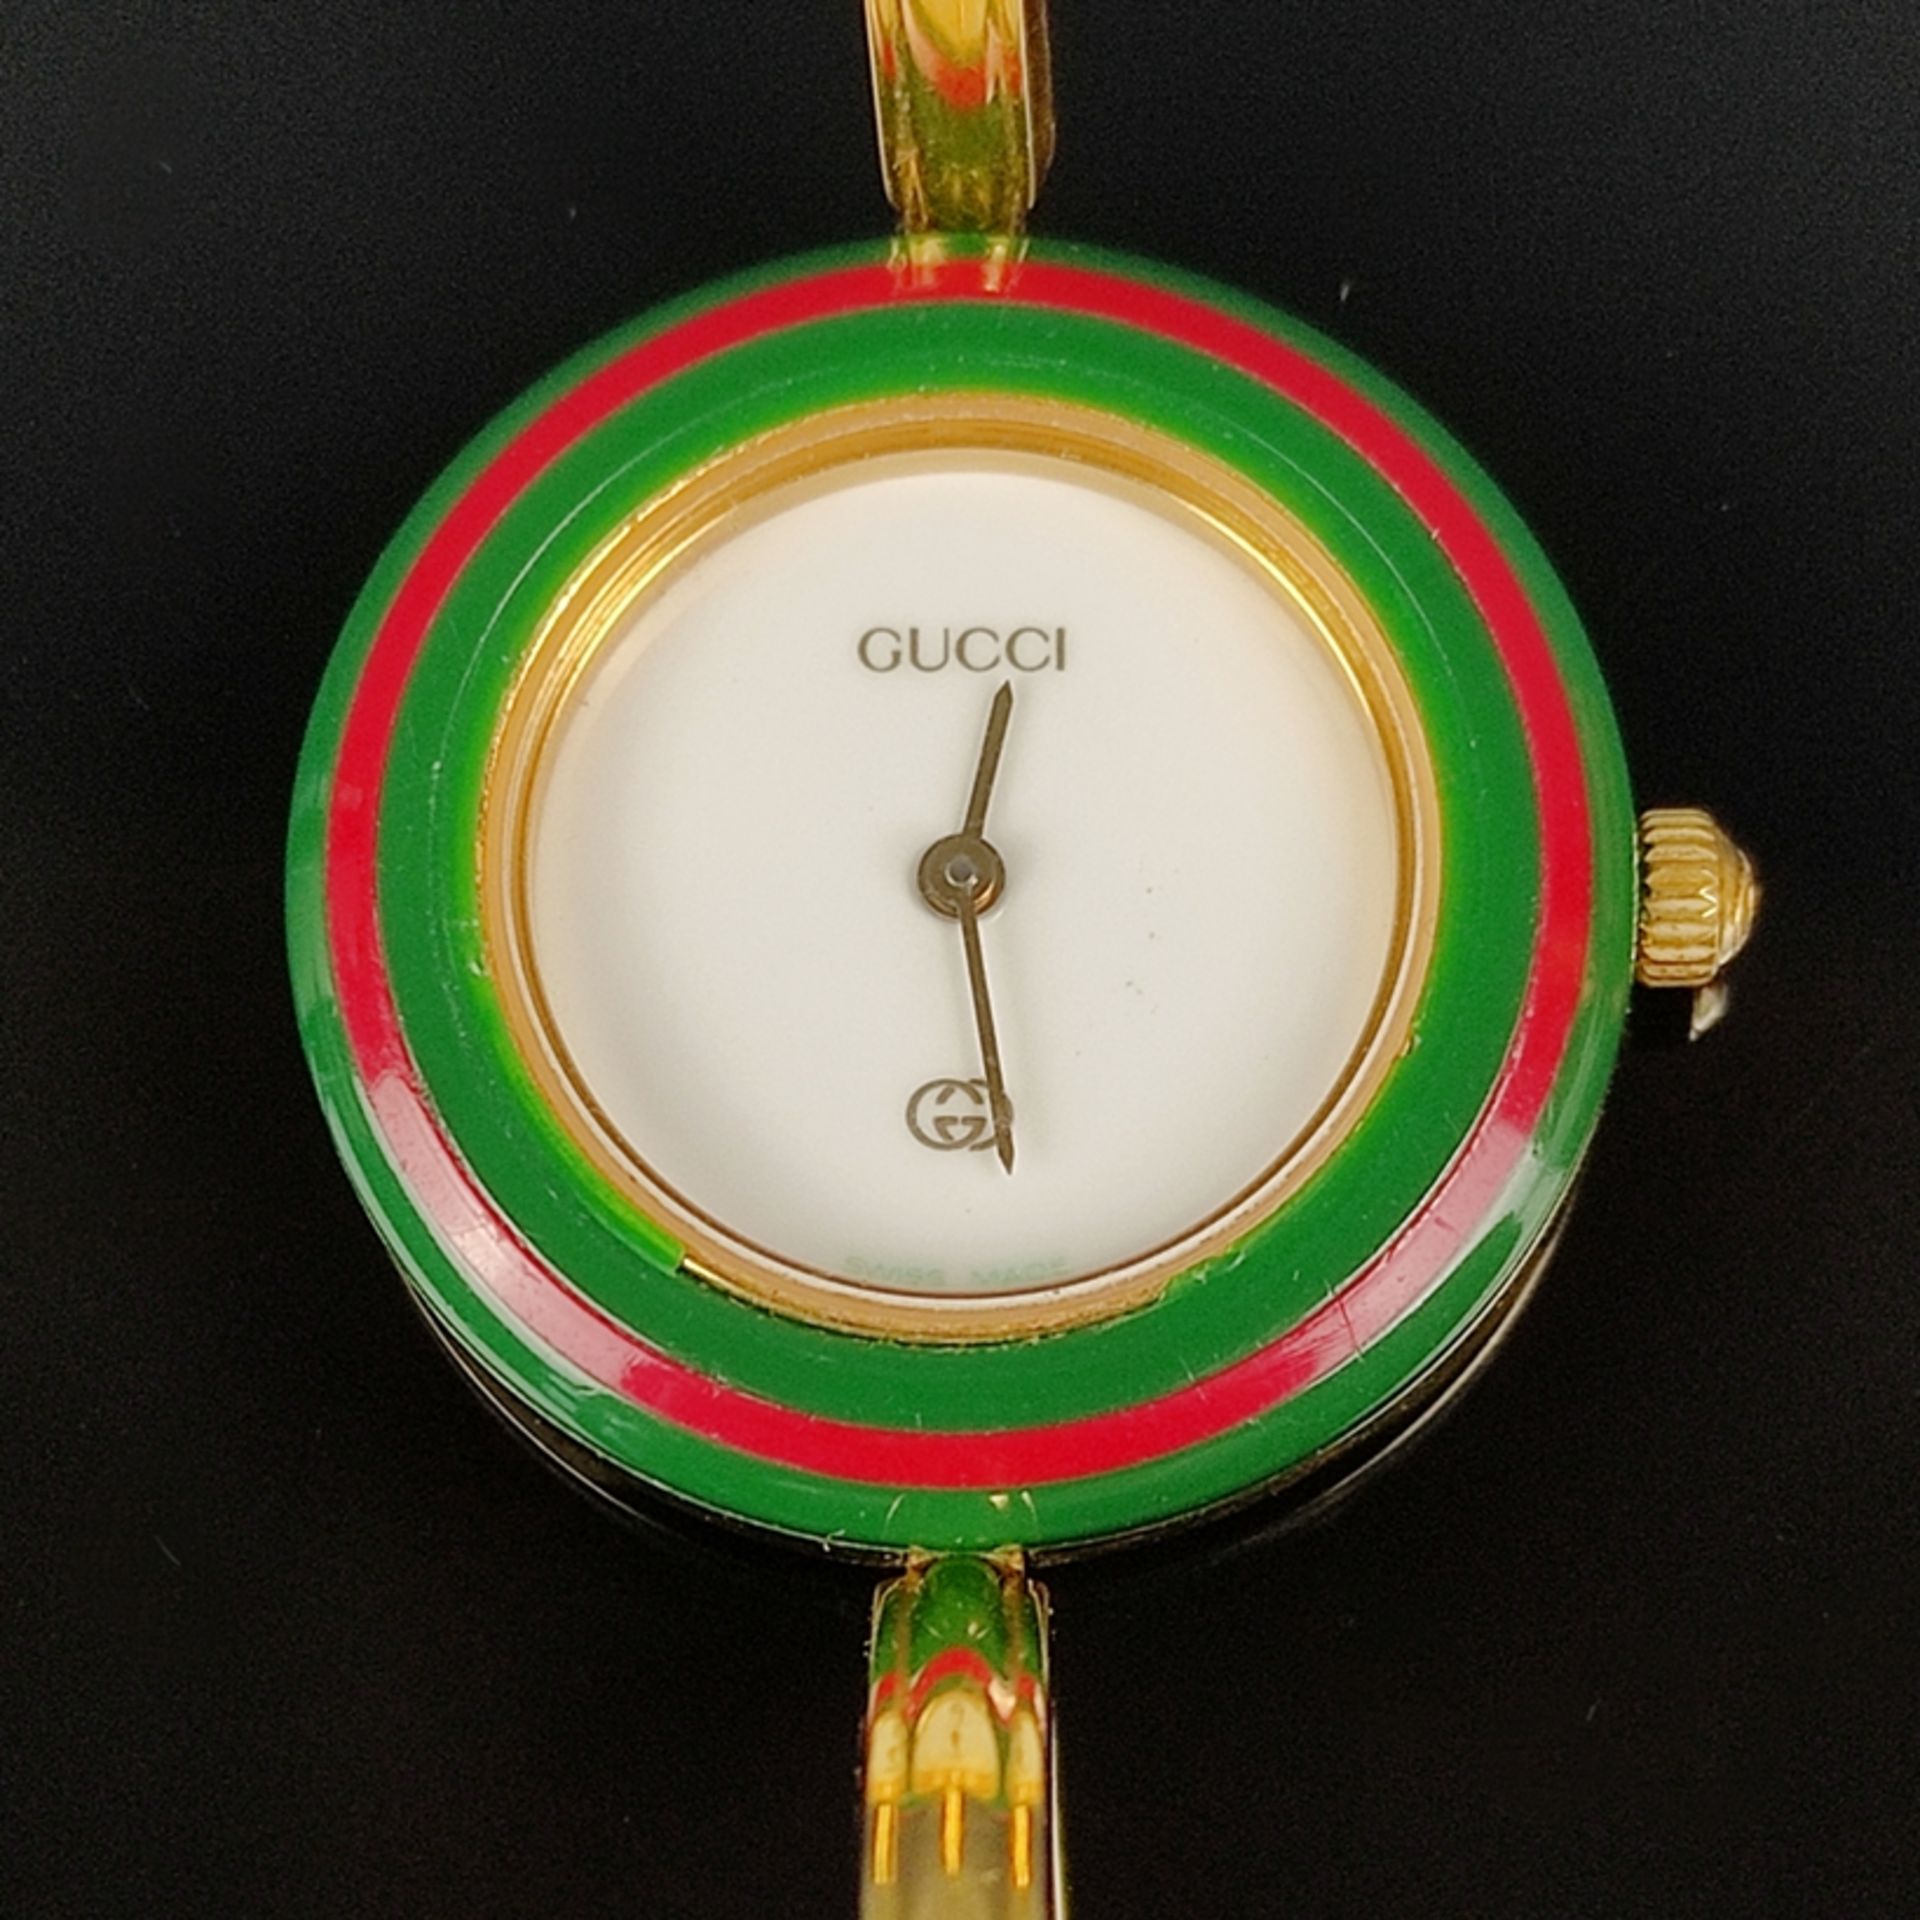 Gucci Vintage-Armbanduhr, Modell 11/12, in Originaletui, anbei insgesamt 12 Wechsellünetten, alle g - Bild 4 aus 4